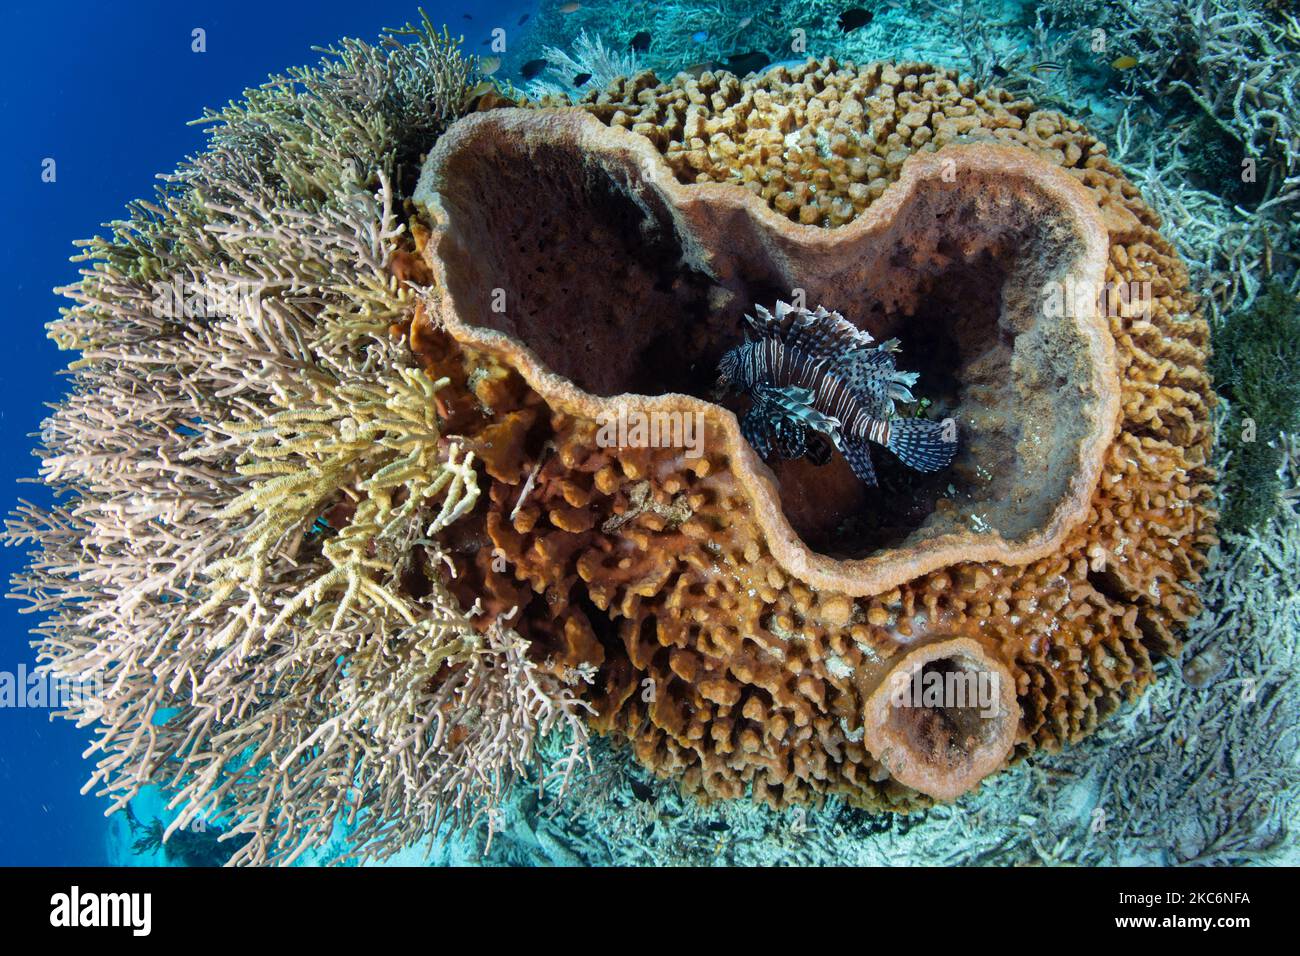 Ein Löwenfisch, Pterois volitans, ruht in einem großen Barrel-Schwamm auf einem Korallenriff in Indonesien. Löwenfische sind gefräßige Raubtiere kleiner Beute. Stockfoto